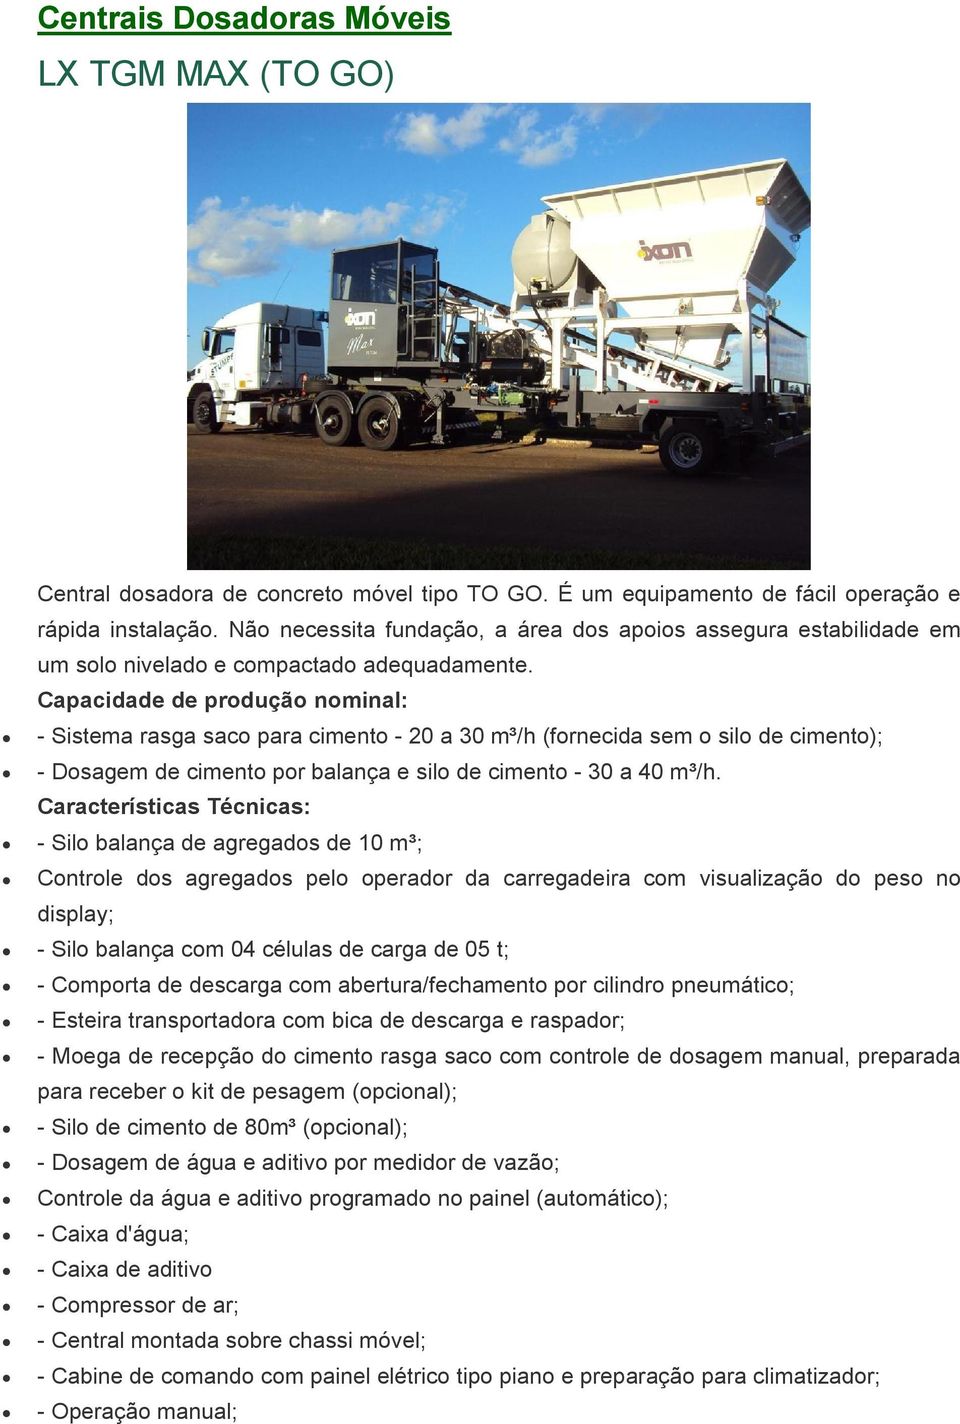 Capacidade de produção nominal: - Sistema rasga saco para cimento - 20 a 30 m³/h (fornecida sem o silo de cimento); - Dosagem de cimento por balança e silo de cimento - 30 a 40 m³/h.